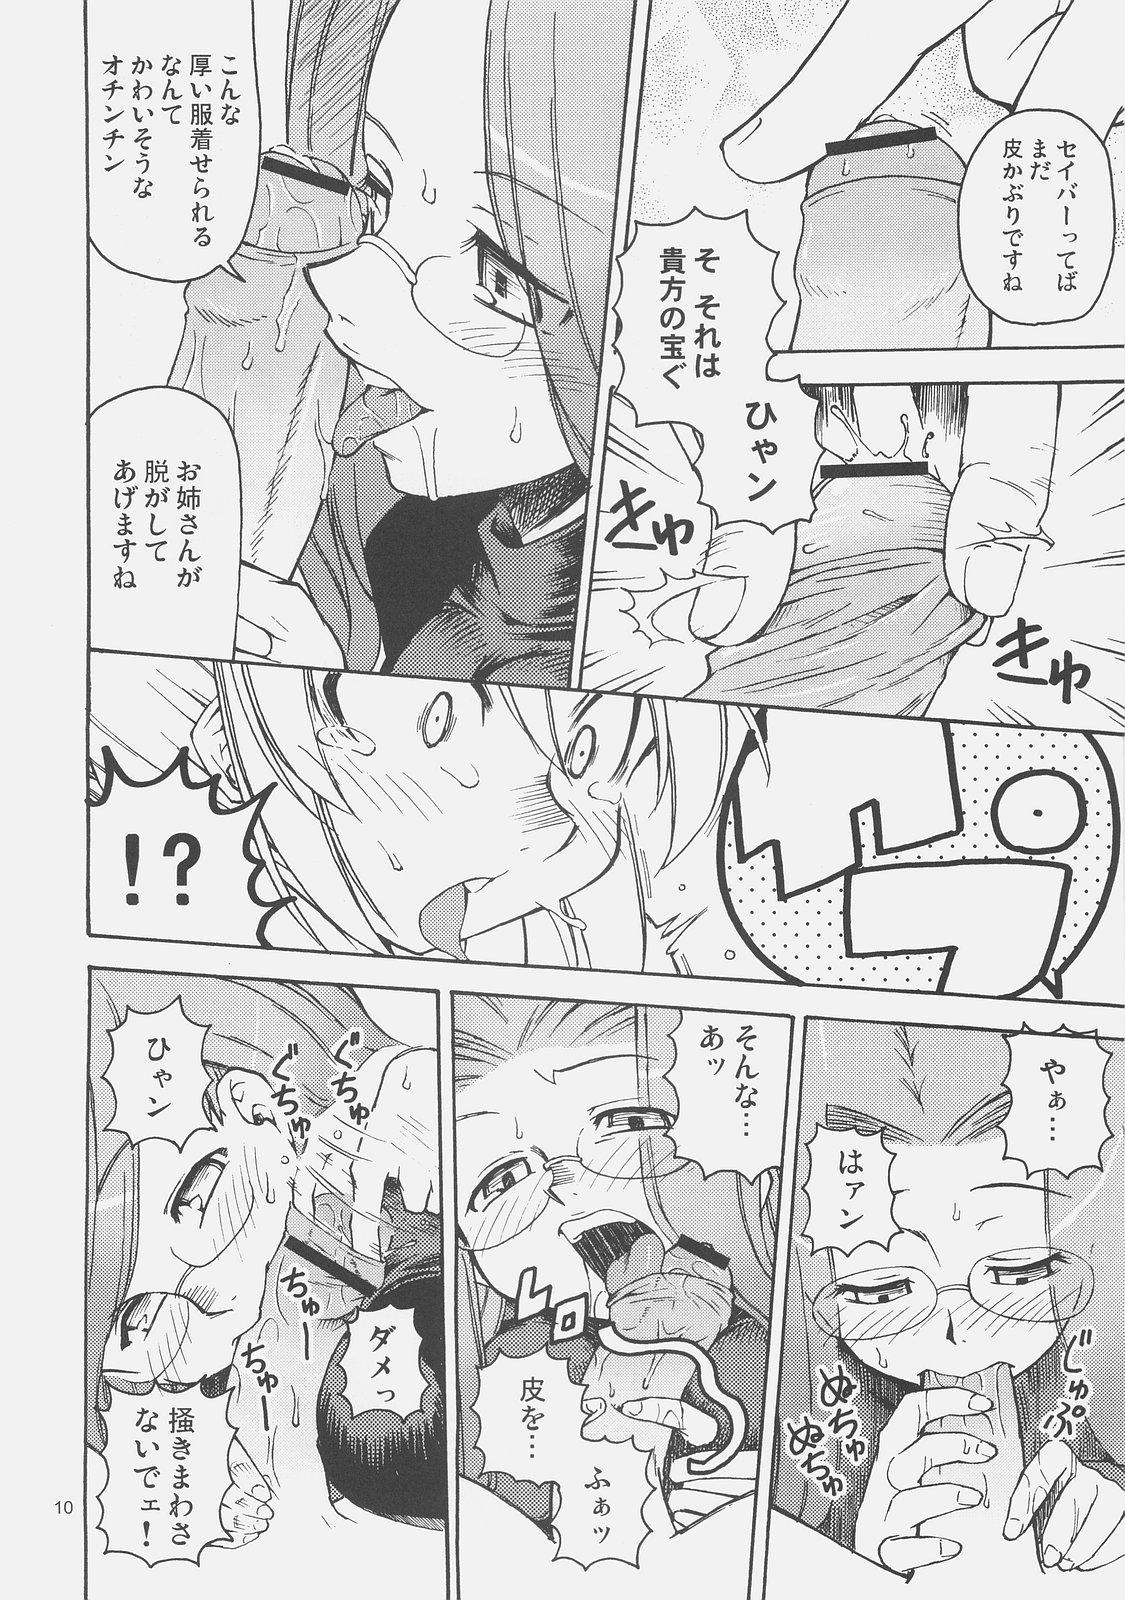 Dancing Kishi to Kihei no Ichinichi - Fate hollow ataraxia Hardcoresex - Page 9